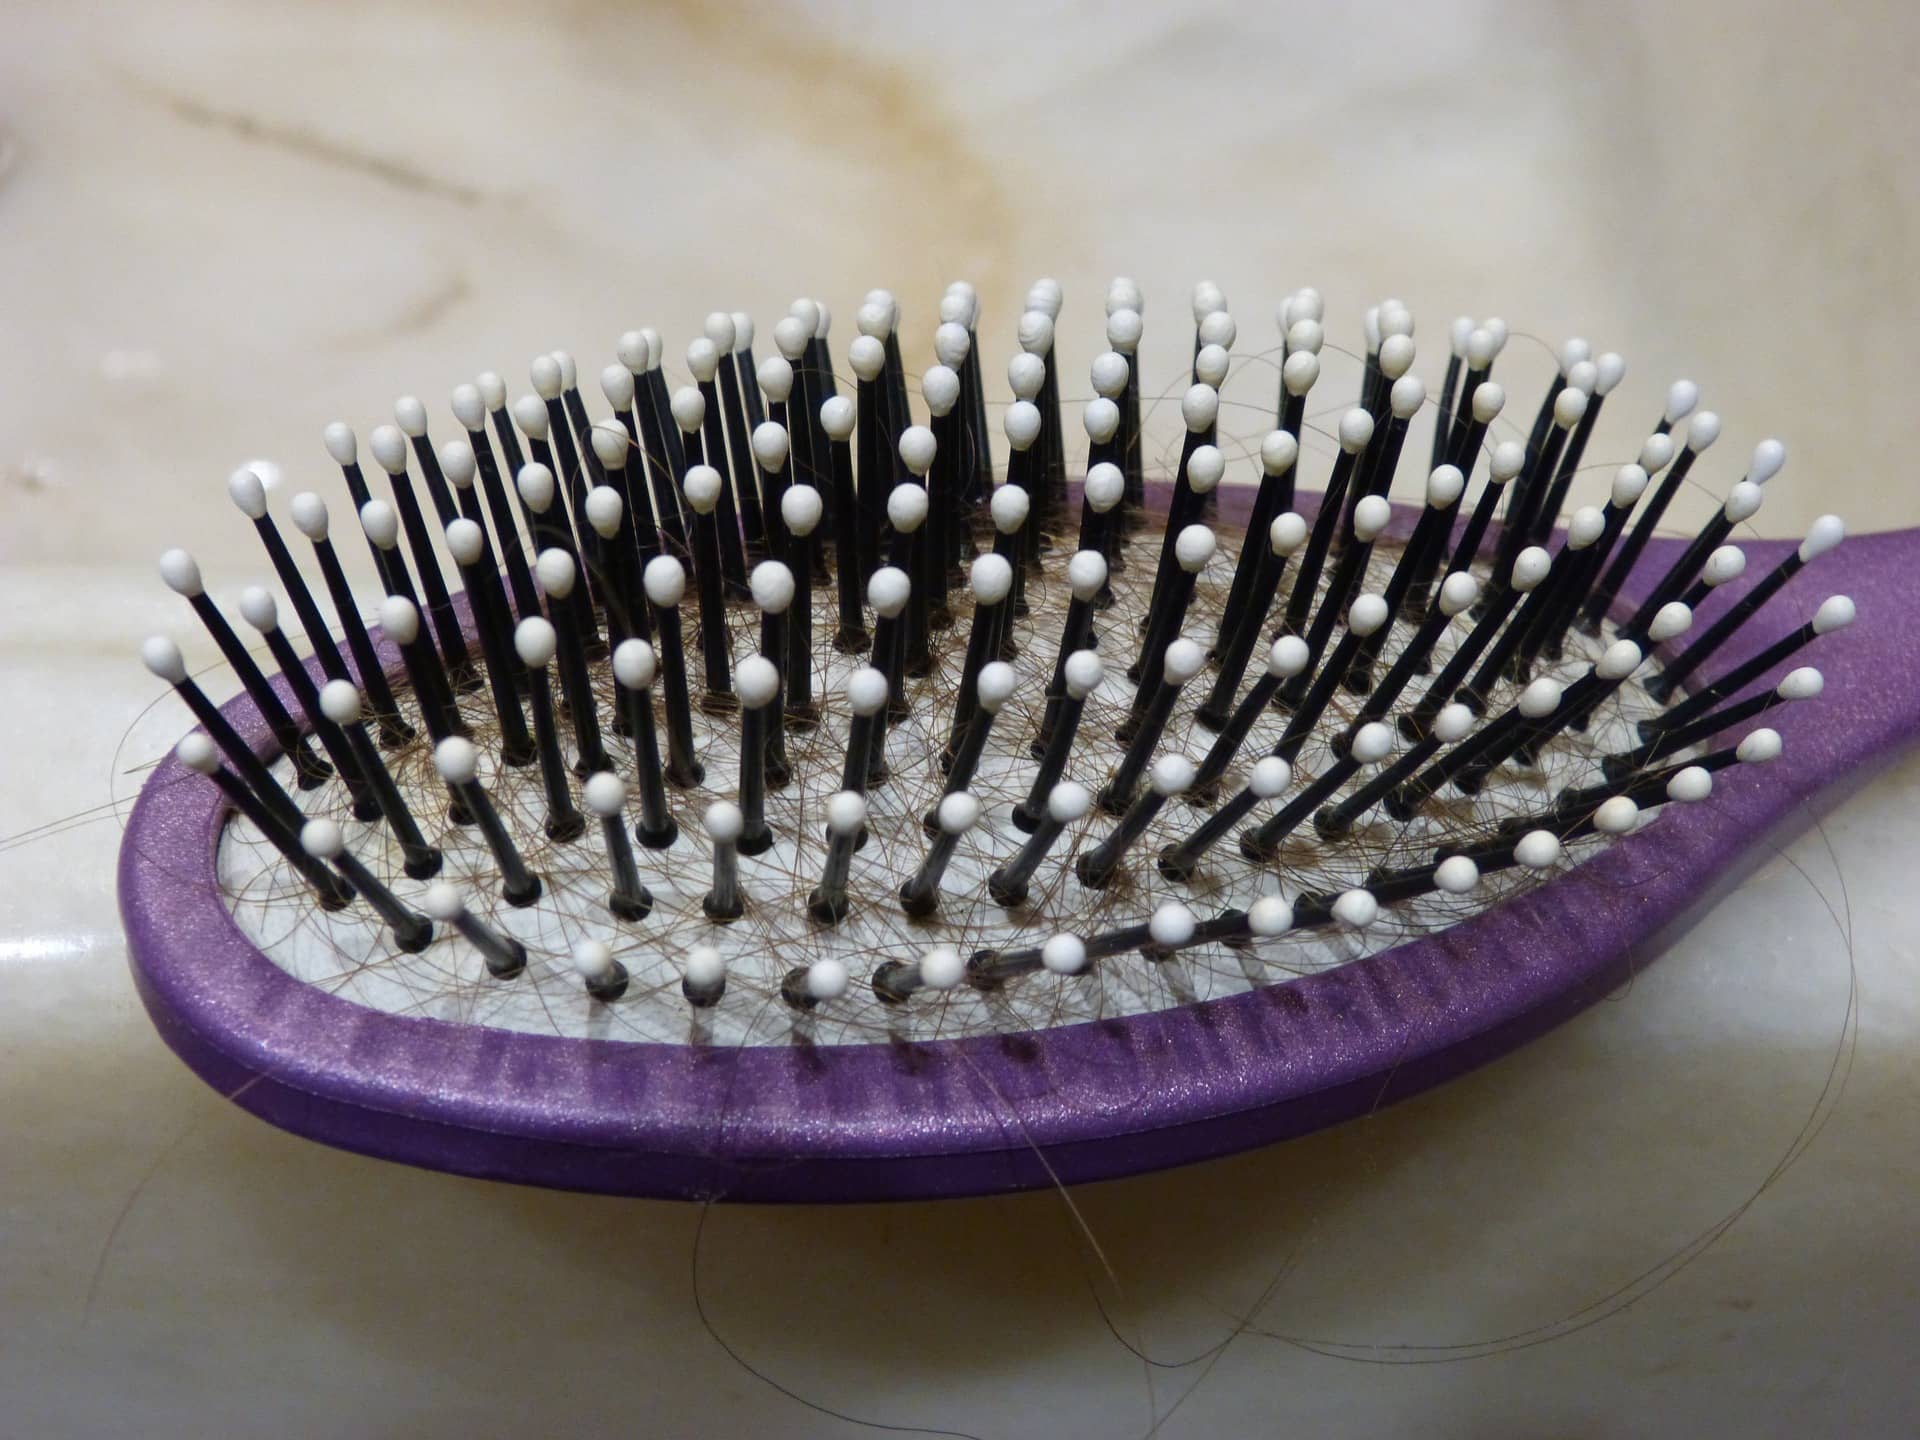 hairbrush